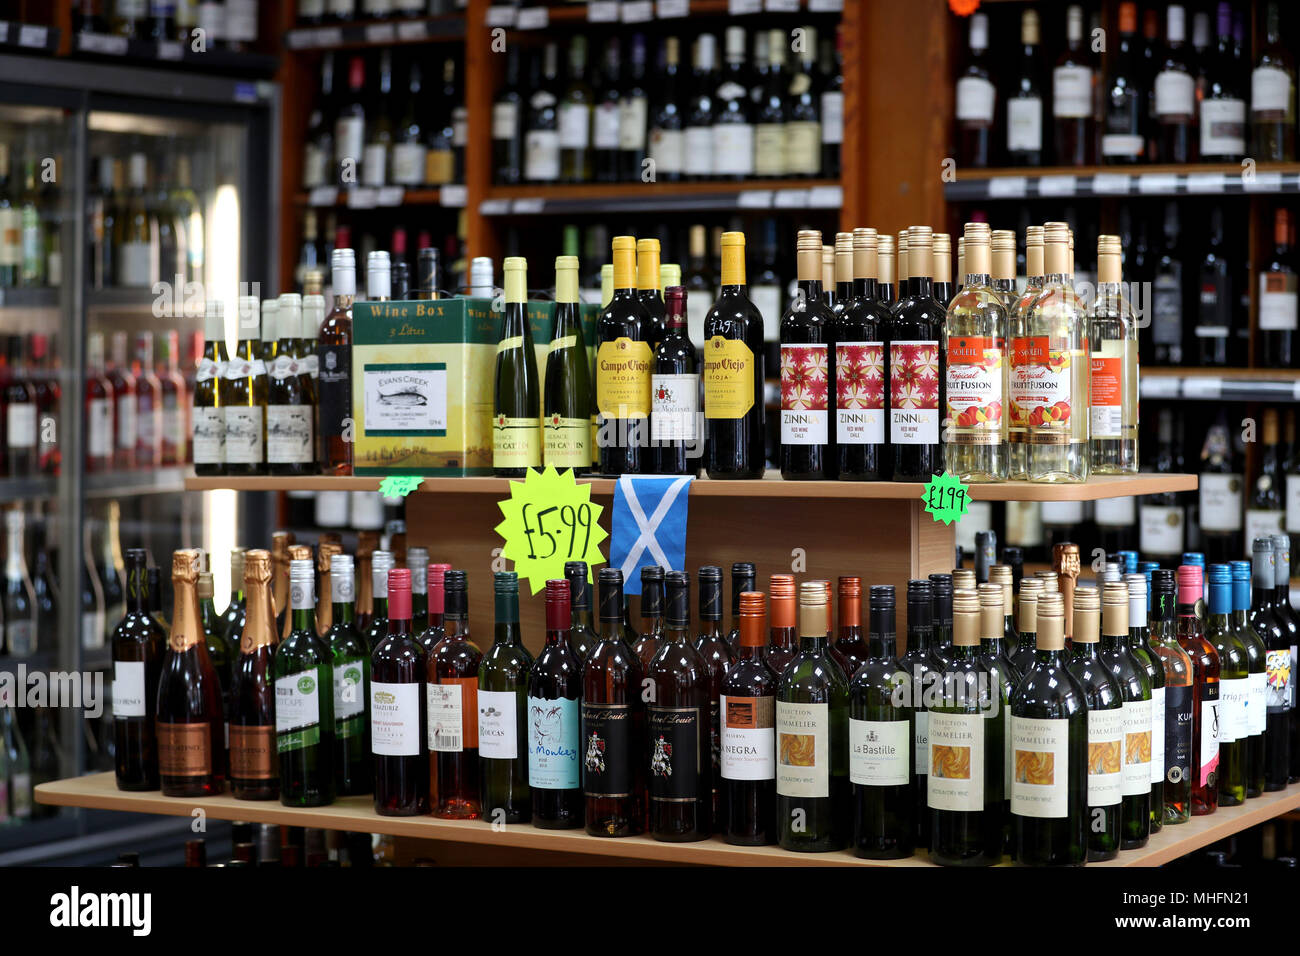 Alkohol für den Verkauf in einem Edinburgh weg - Lizenz wie Schottland hat das erste Land der Welt kleinste Einheit die Preise für die Getränke einzuführen. Stockfoto